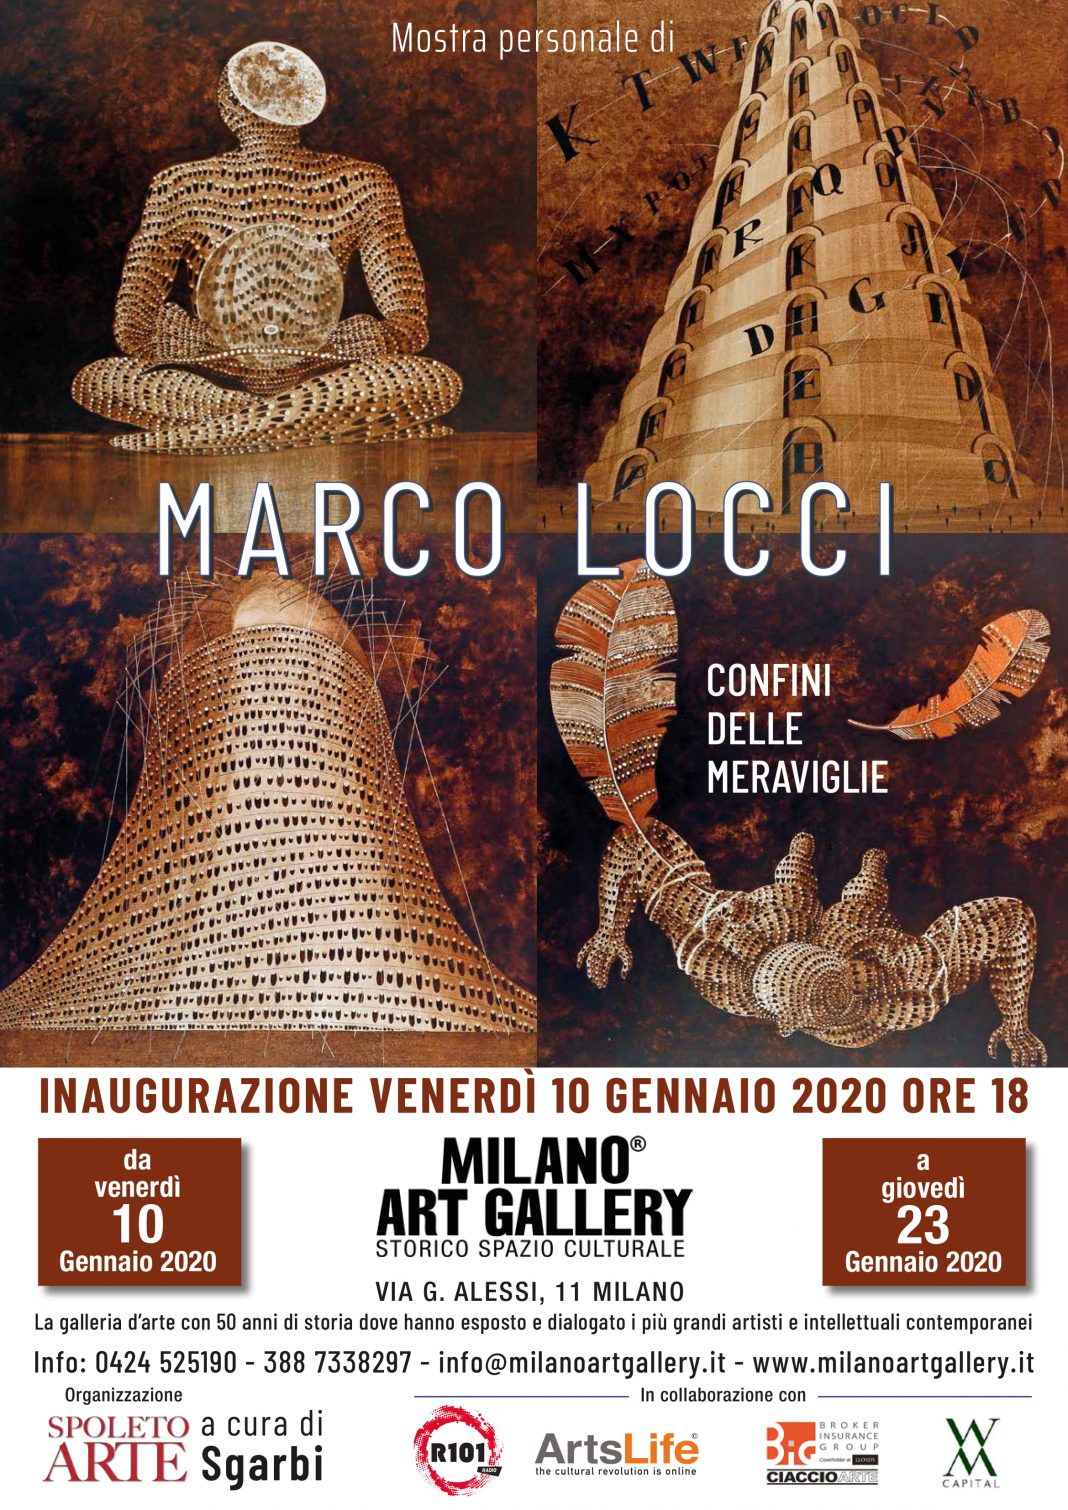 Marco Locci – I confini delle meravigliehttps://www.exibart.com/repository/media/formidable/11/locandina-mostra-LOCCI-MAG-1068x1510.jpg